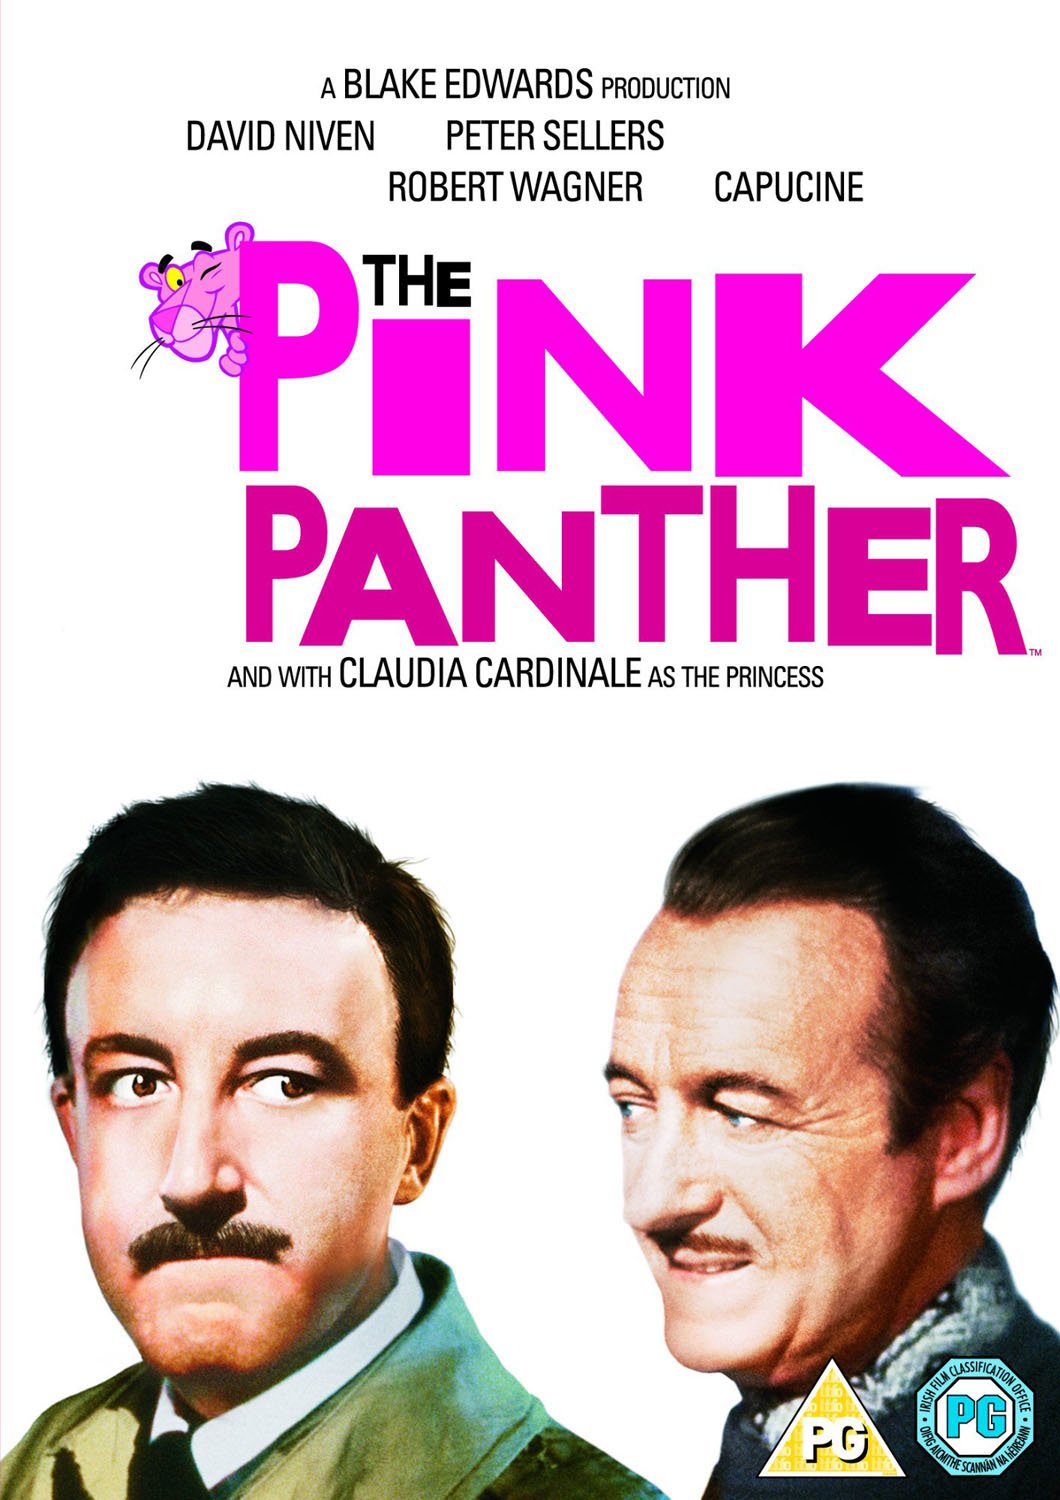 The Pink Panther | Blake Edwards